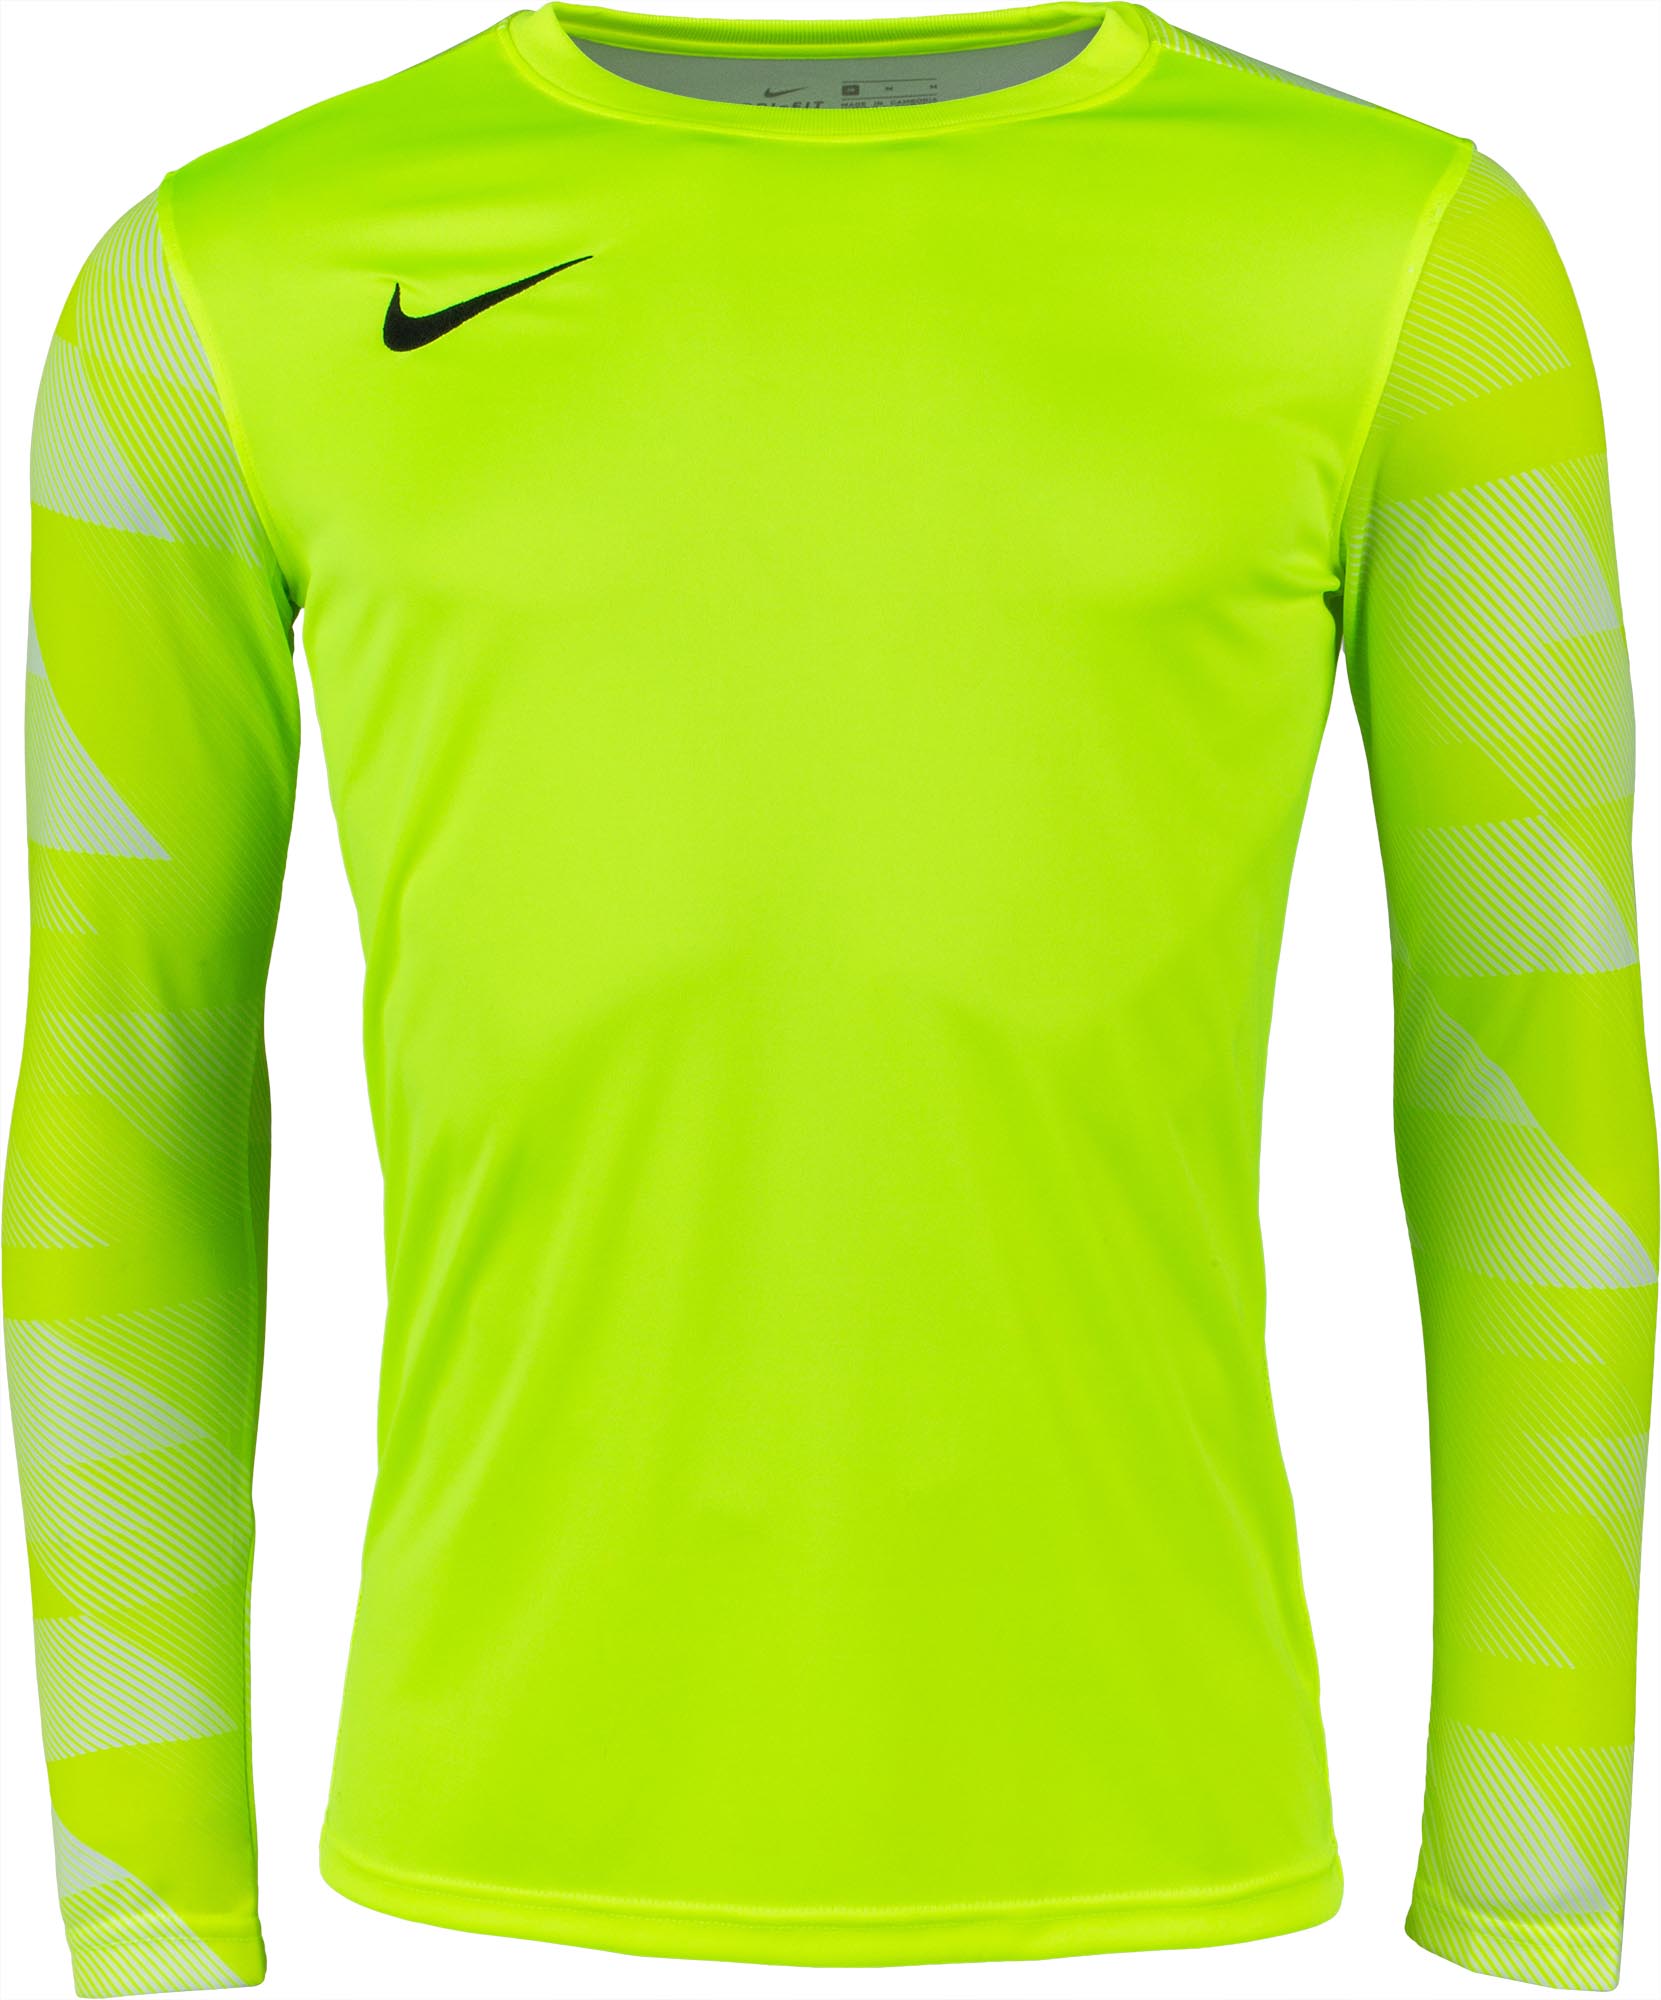 Men’s goalkeeper jersey